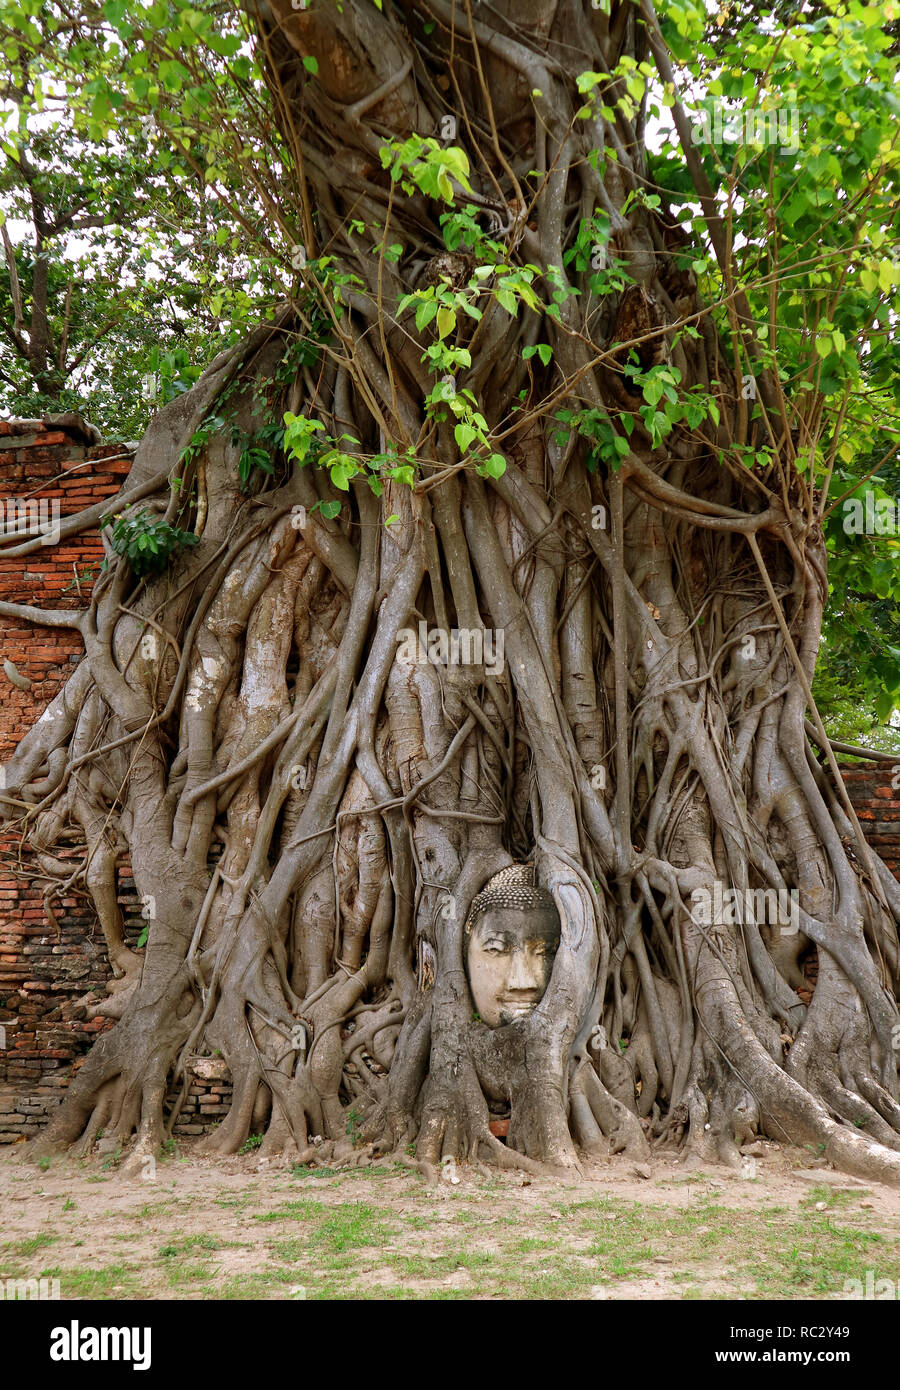 Bodhi tree immagini e fotografie stock ad alta risoluzione - Alamy